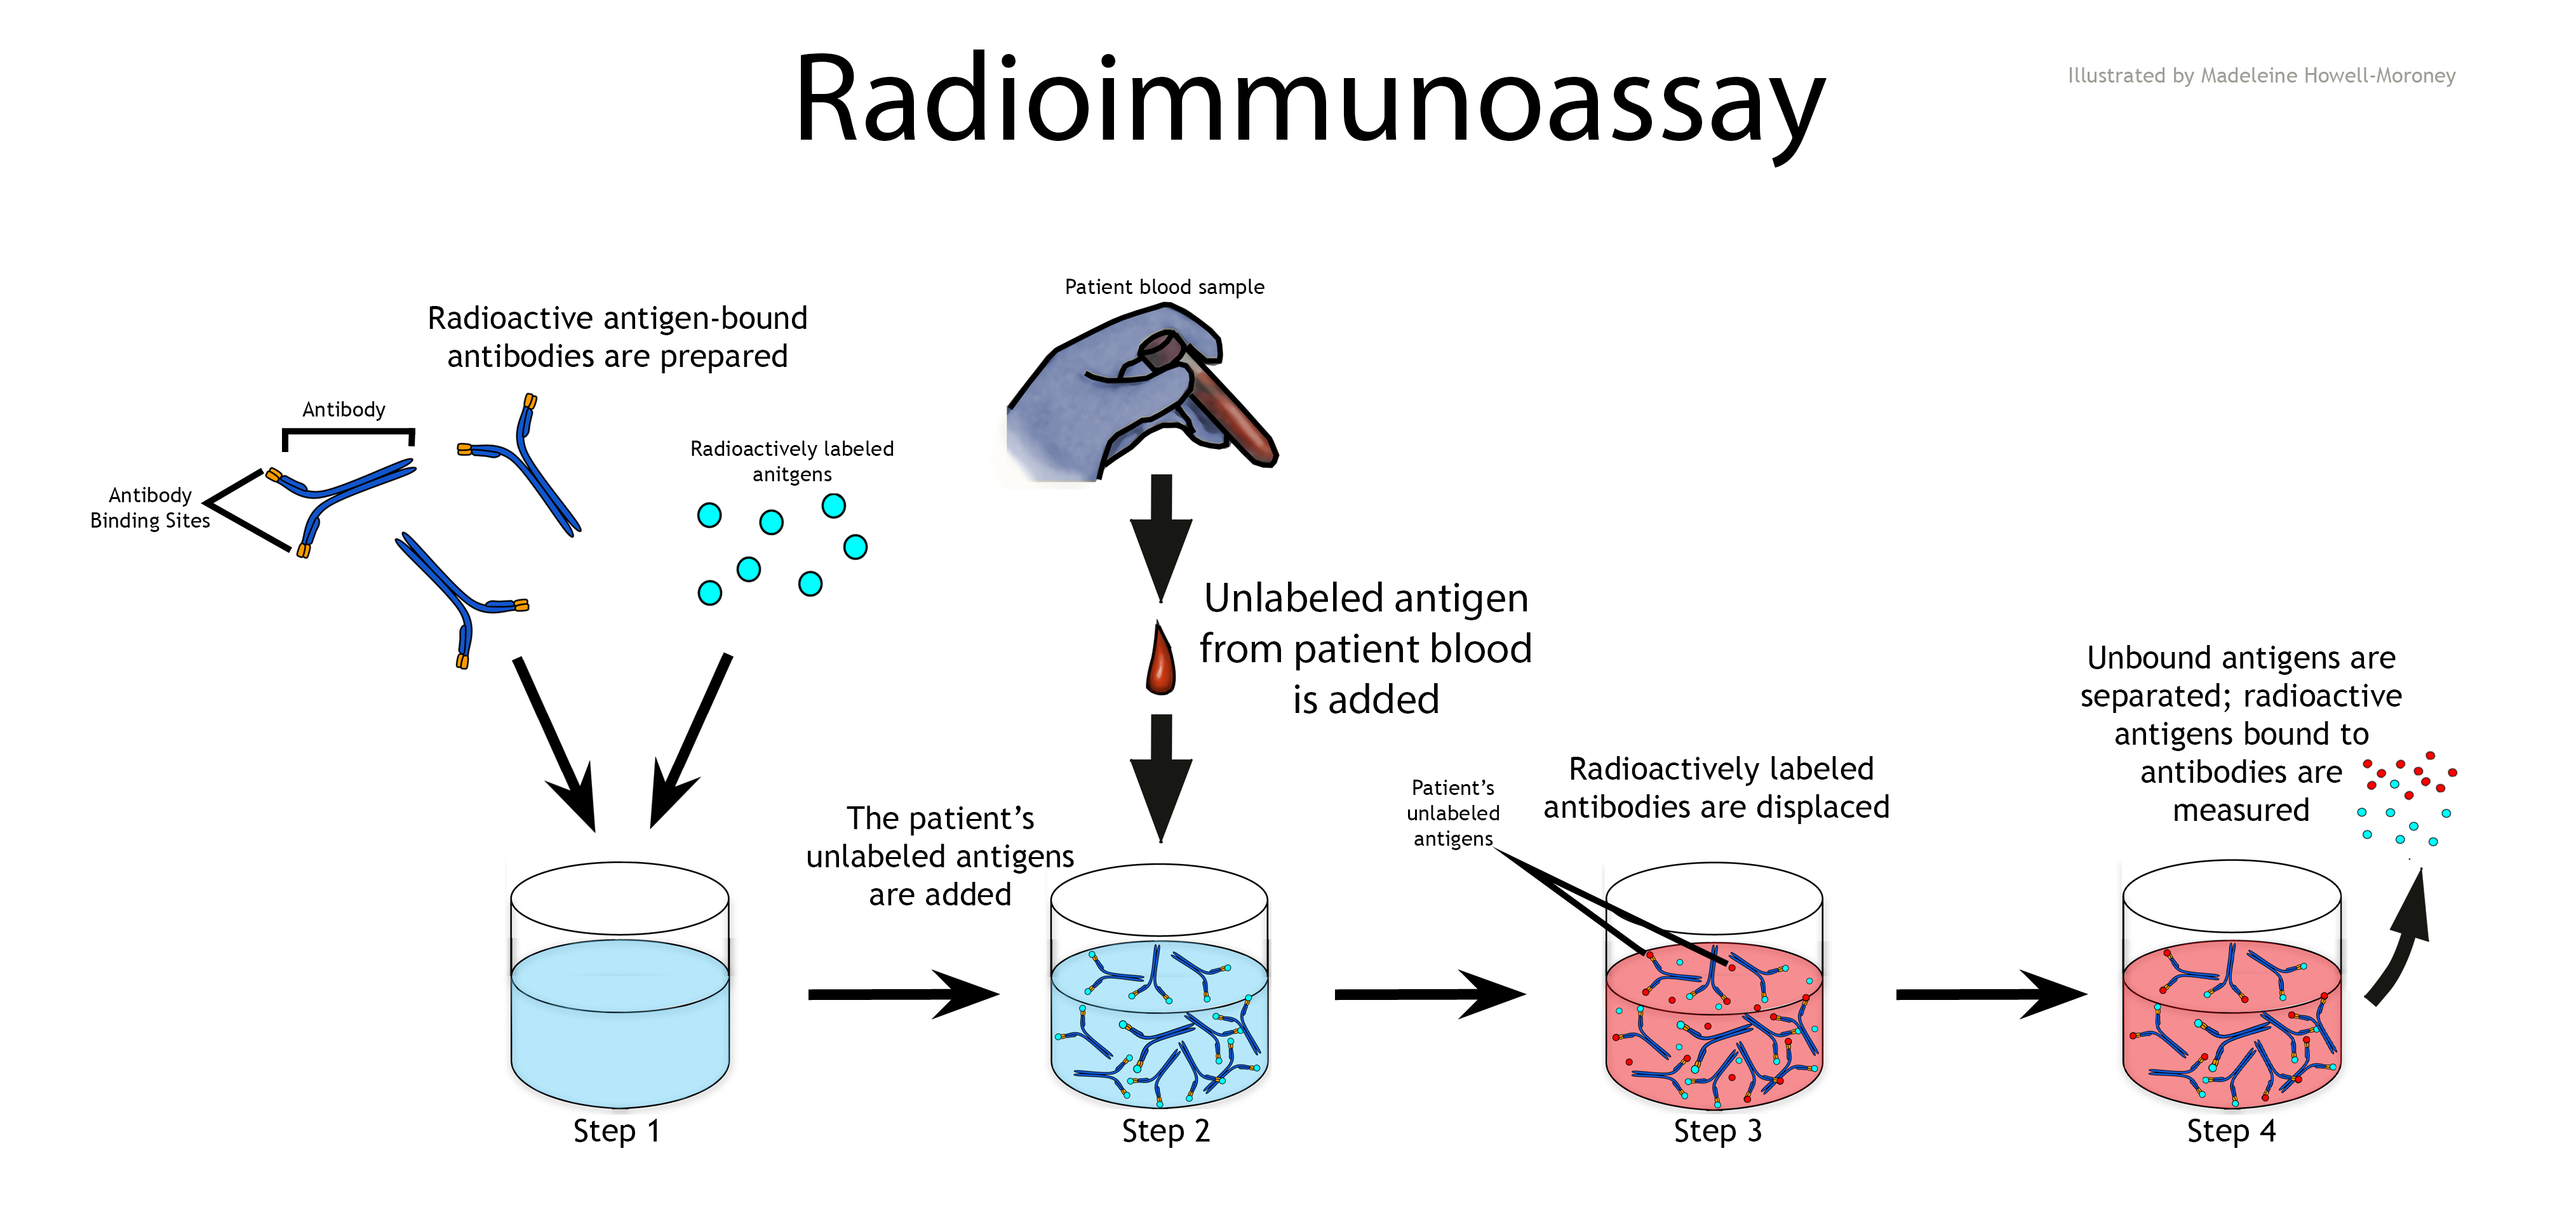 Radioimmunoassay - image